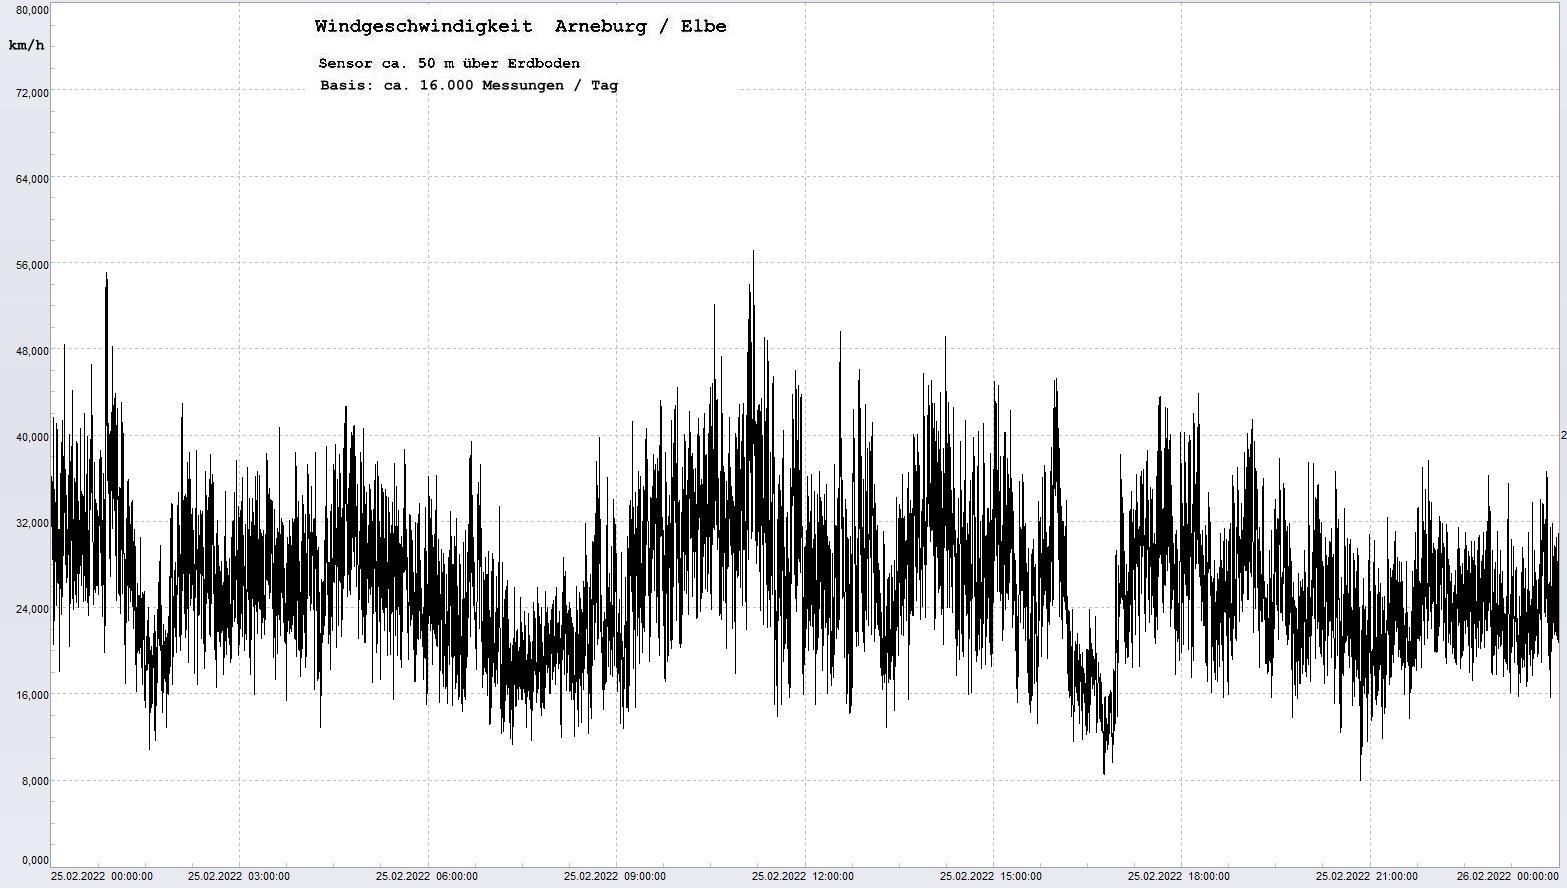 Arneburg Tages-Diagramm Winddaten, 25.02.2022
  Diagramm, Sensor auf Gebude, ca. 50 m ber Erdboden, Basis: 5s-Aufzeichnung